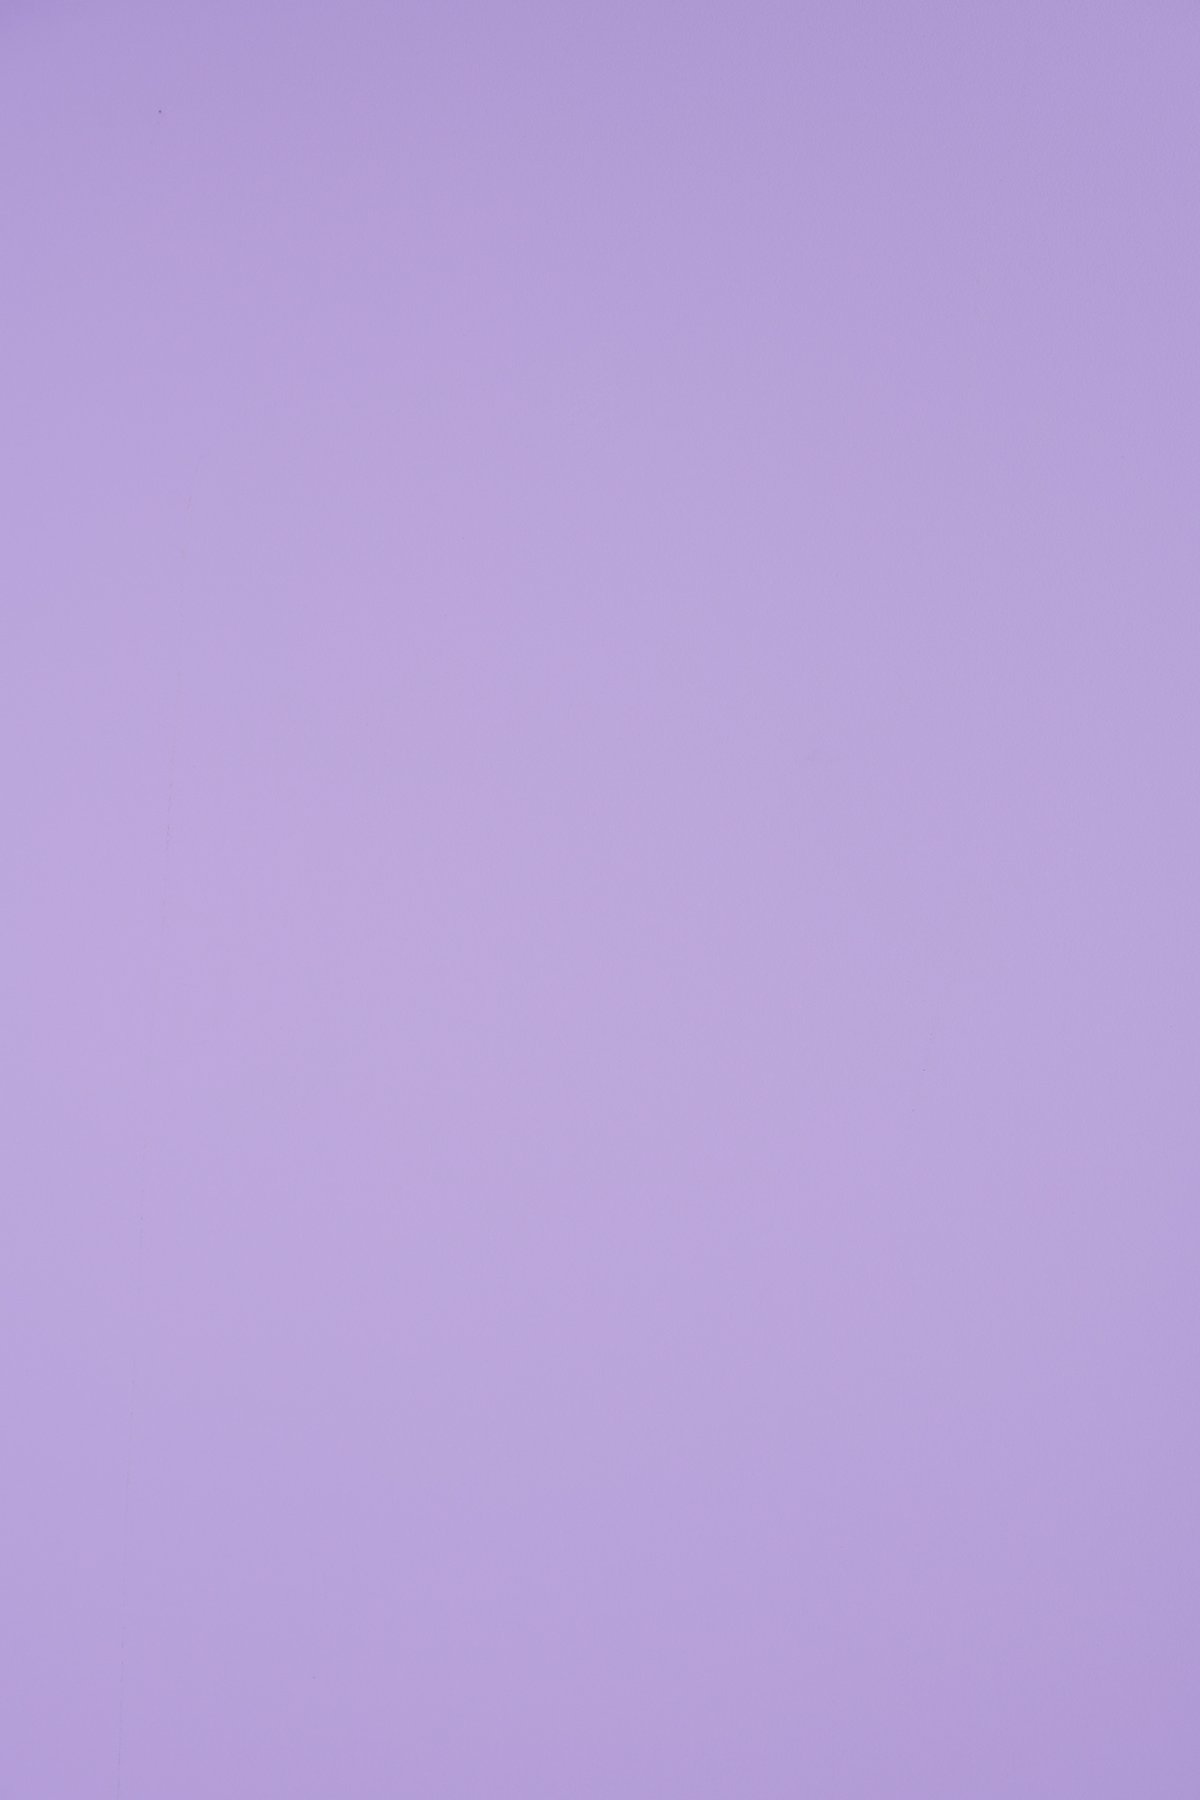 Нежно фиолетовый цвет фон